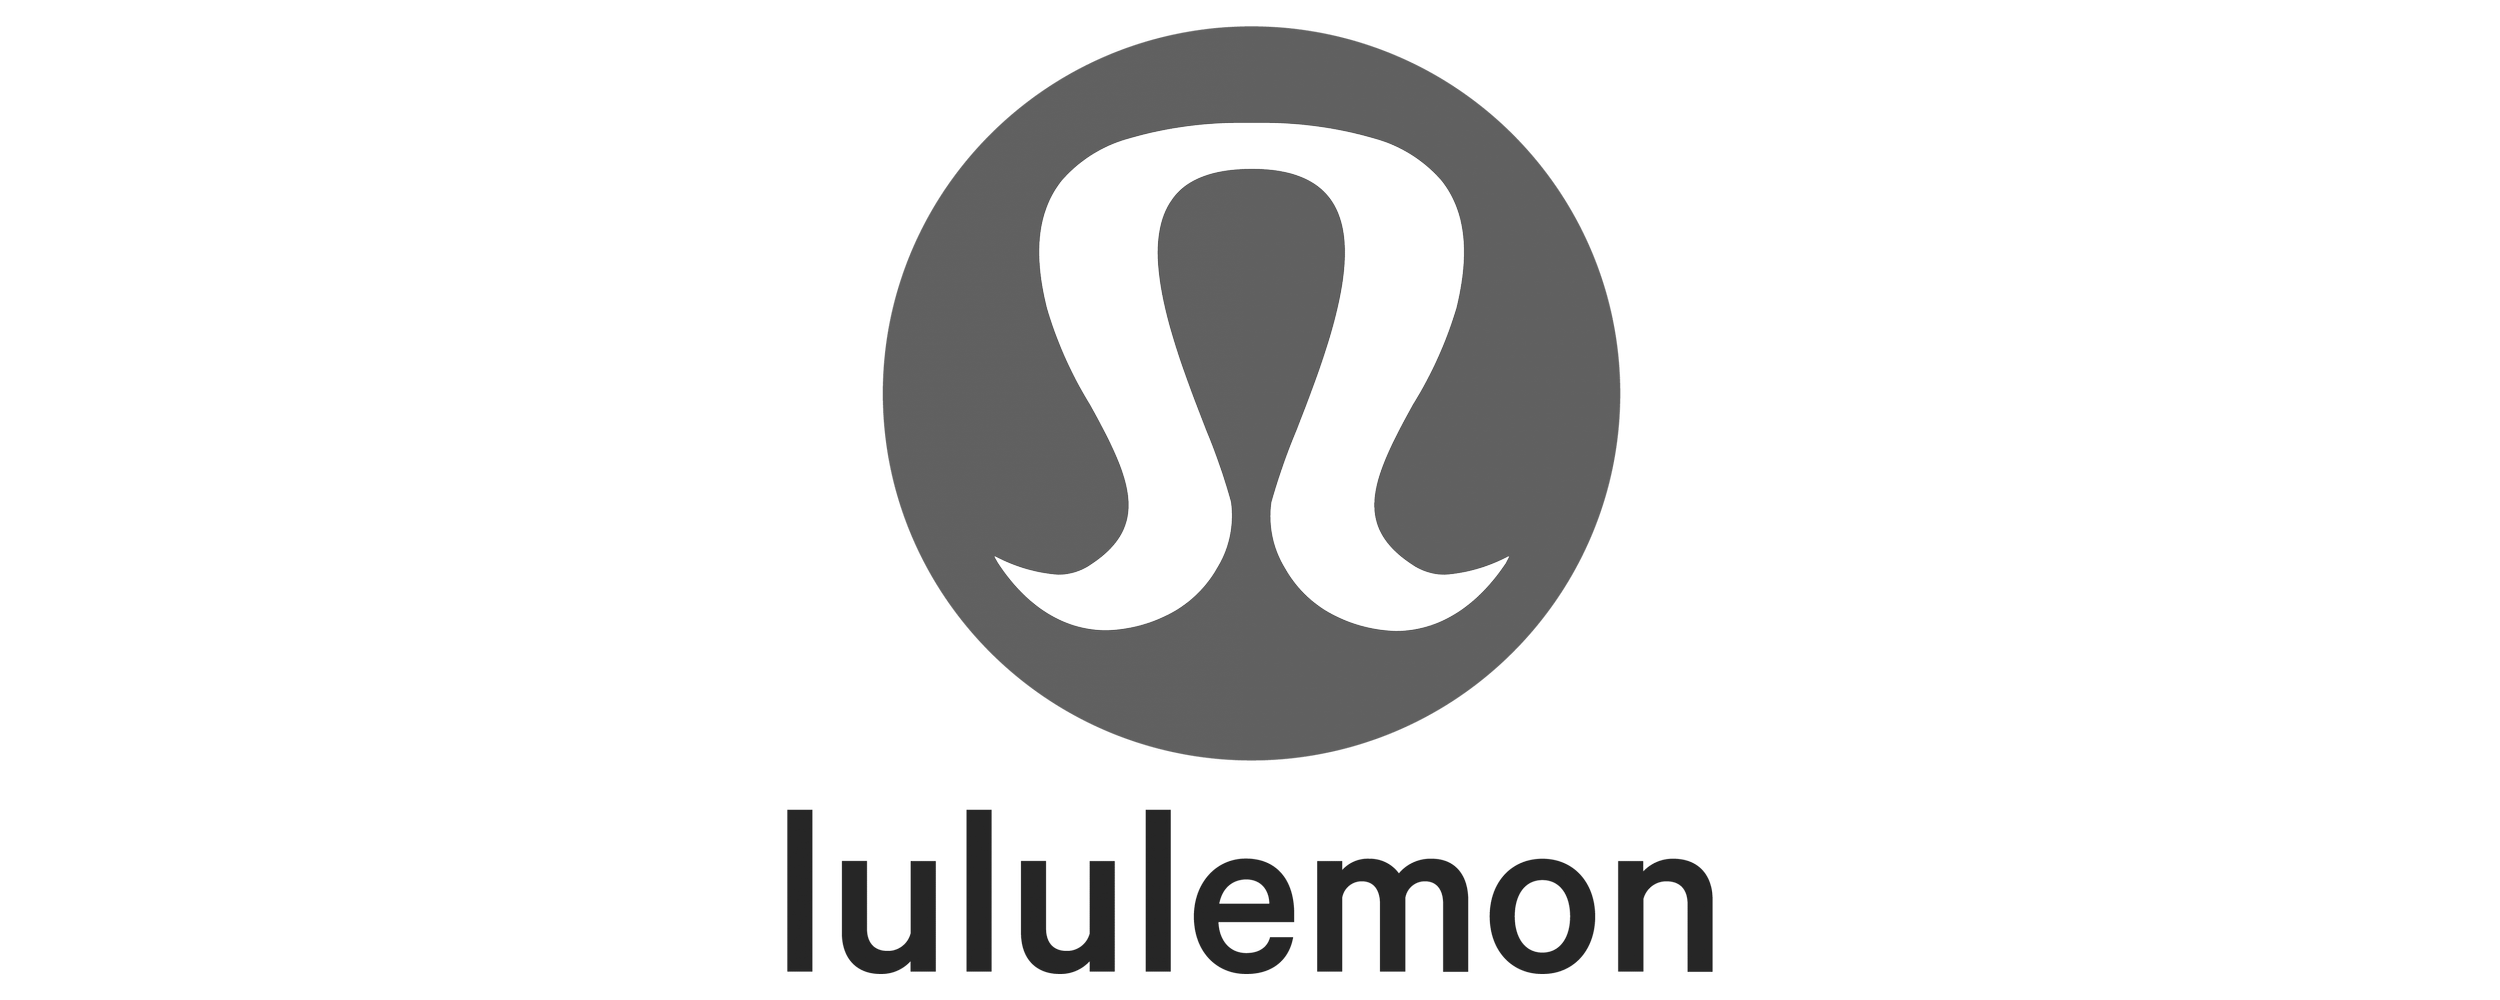 512-5127106_lululemon-emblema-lululemon-logo-black-background-2001x2048-2503325271.png